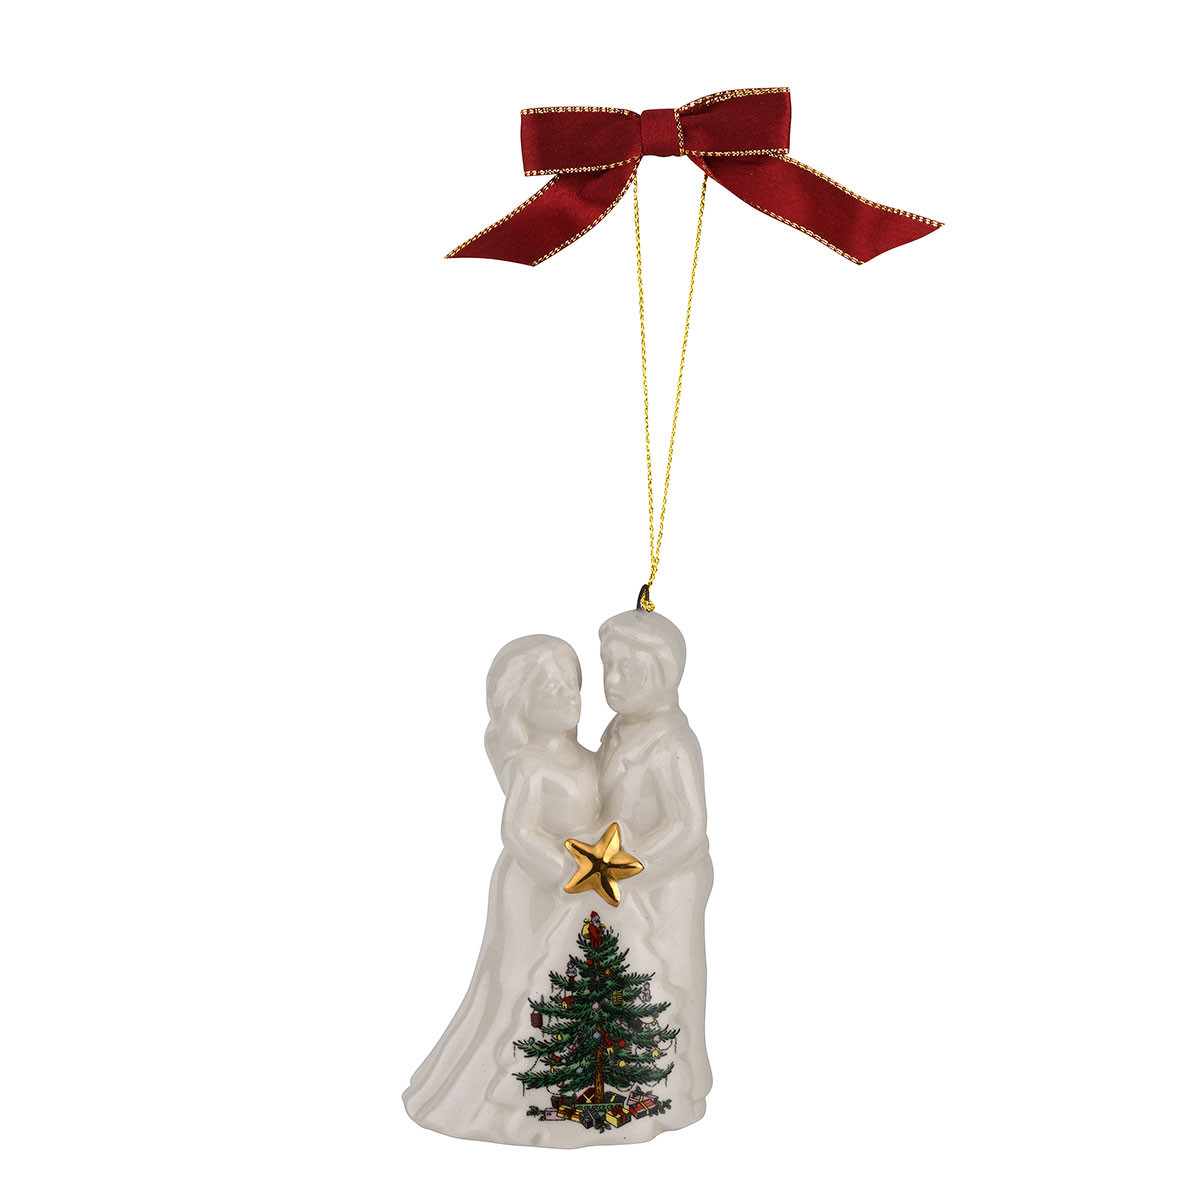 Spode Bride And Groom Christmas Ornament